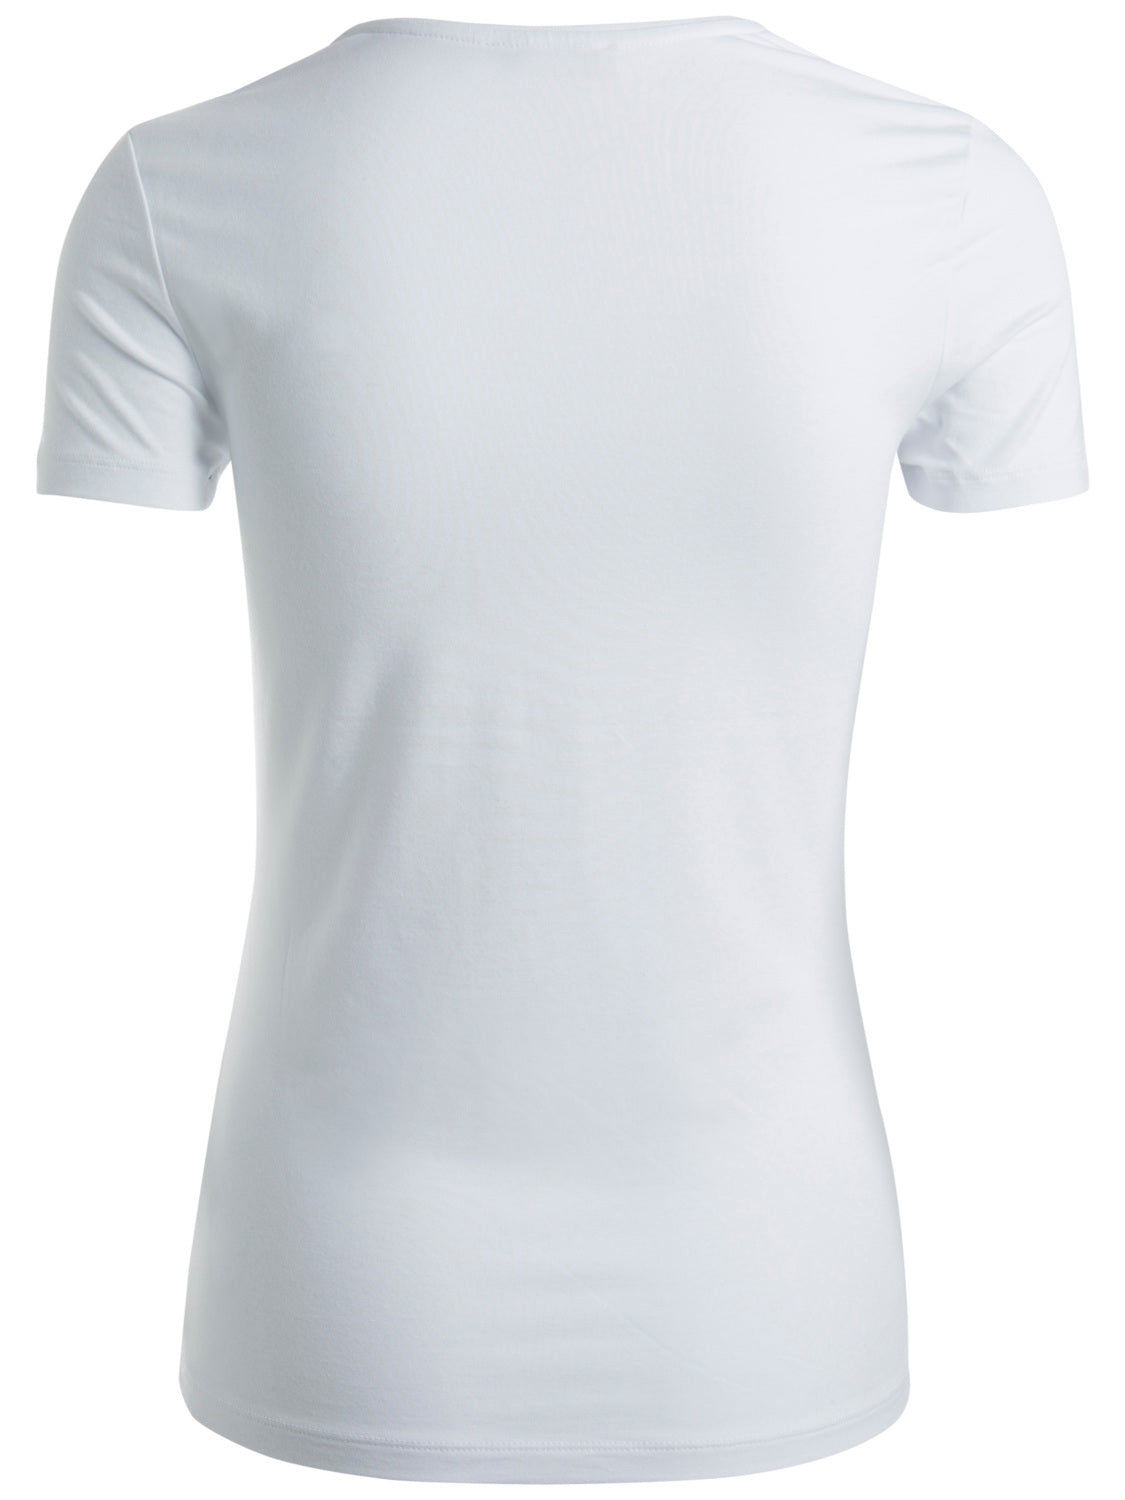 PCSIRENE T-shirt - bright white